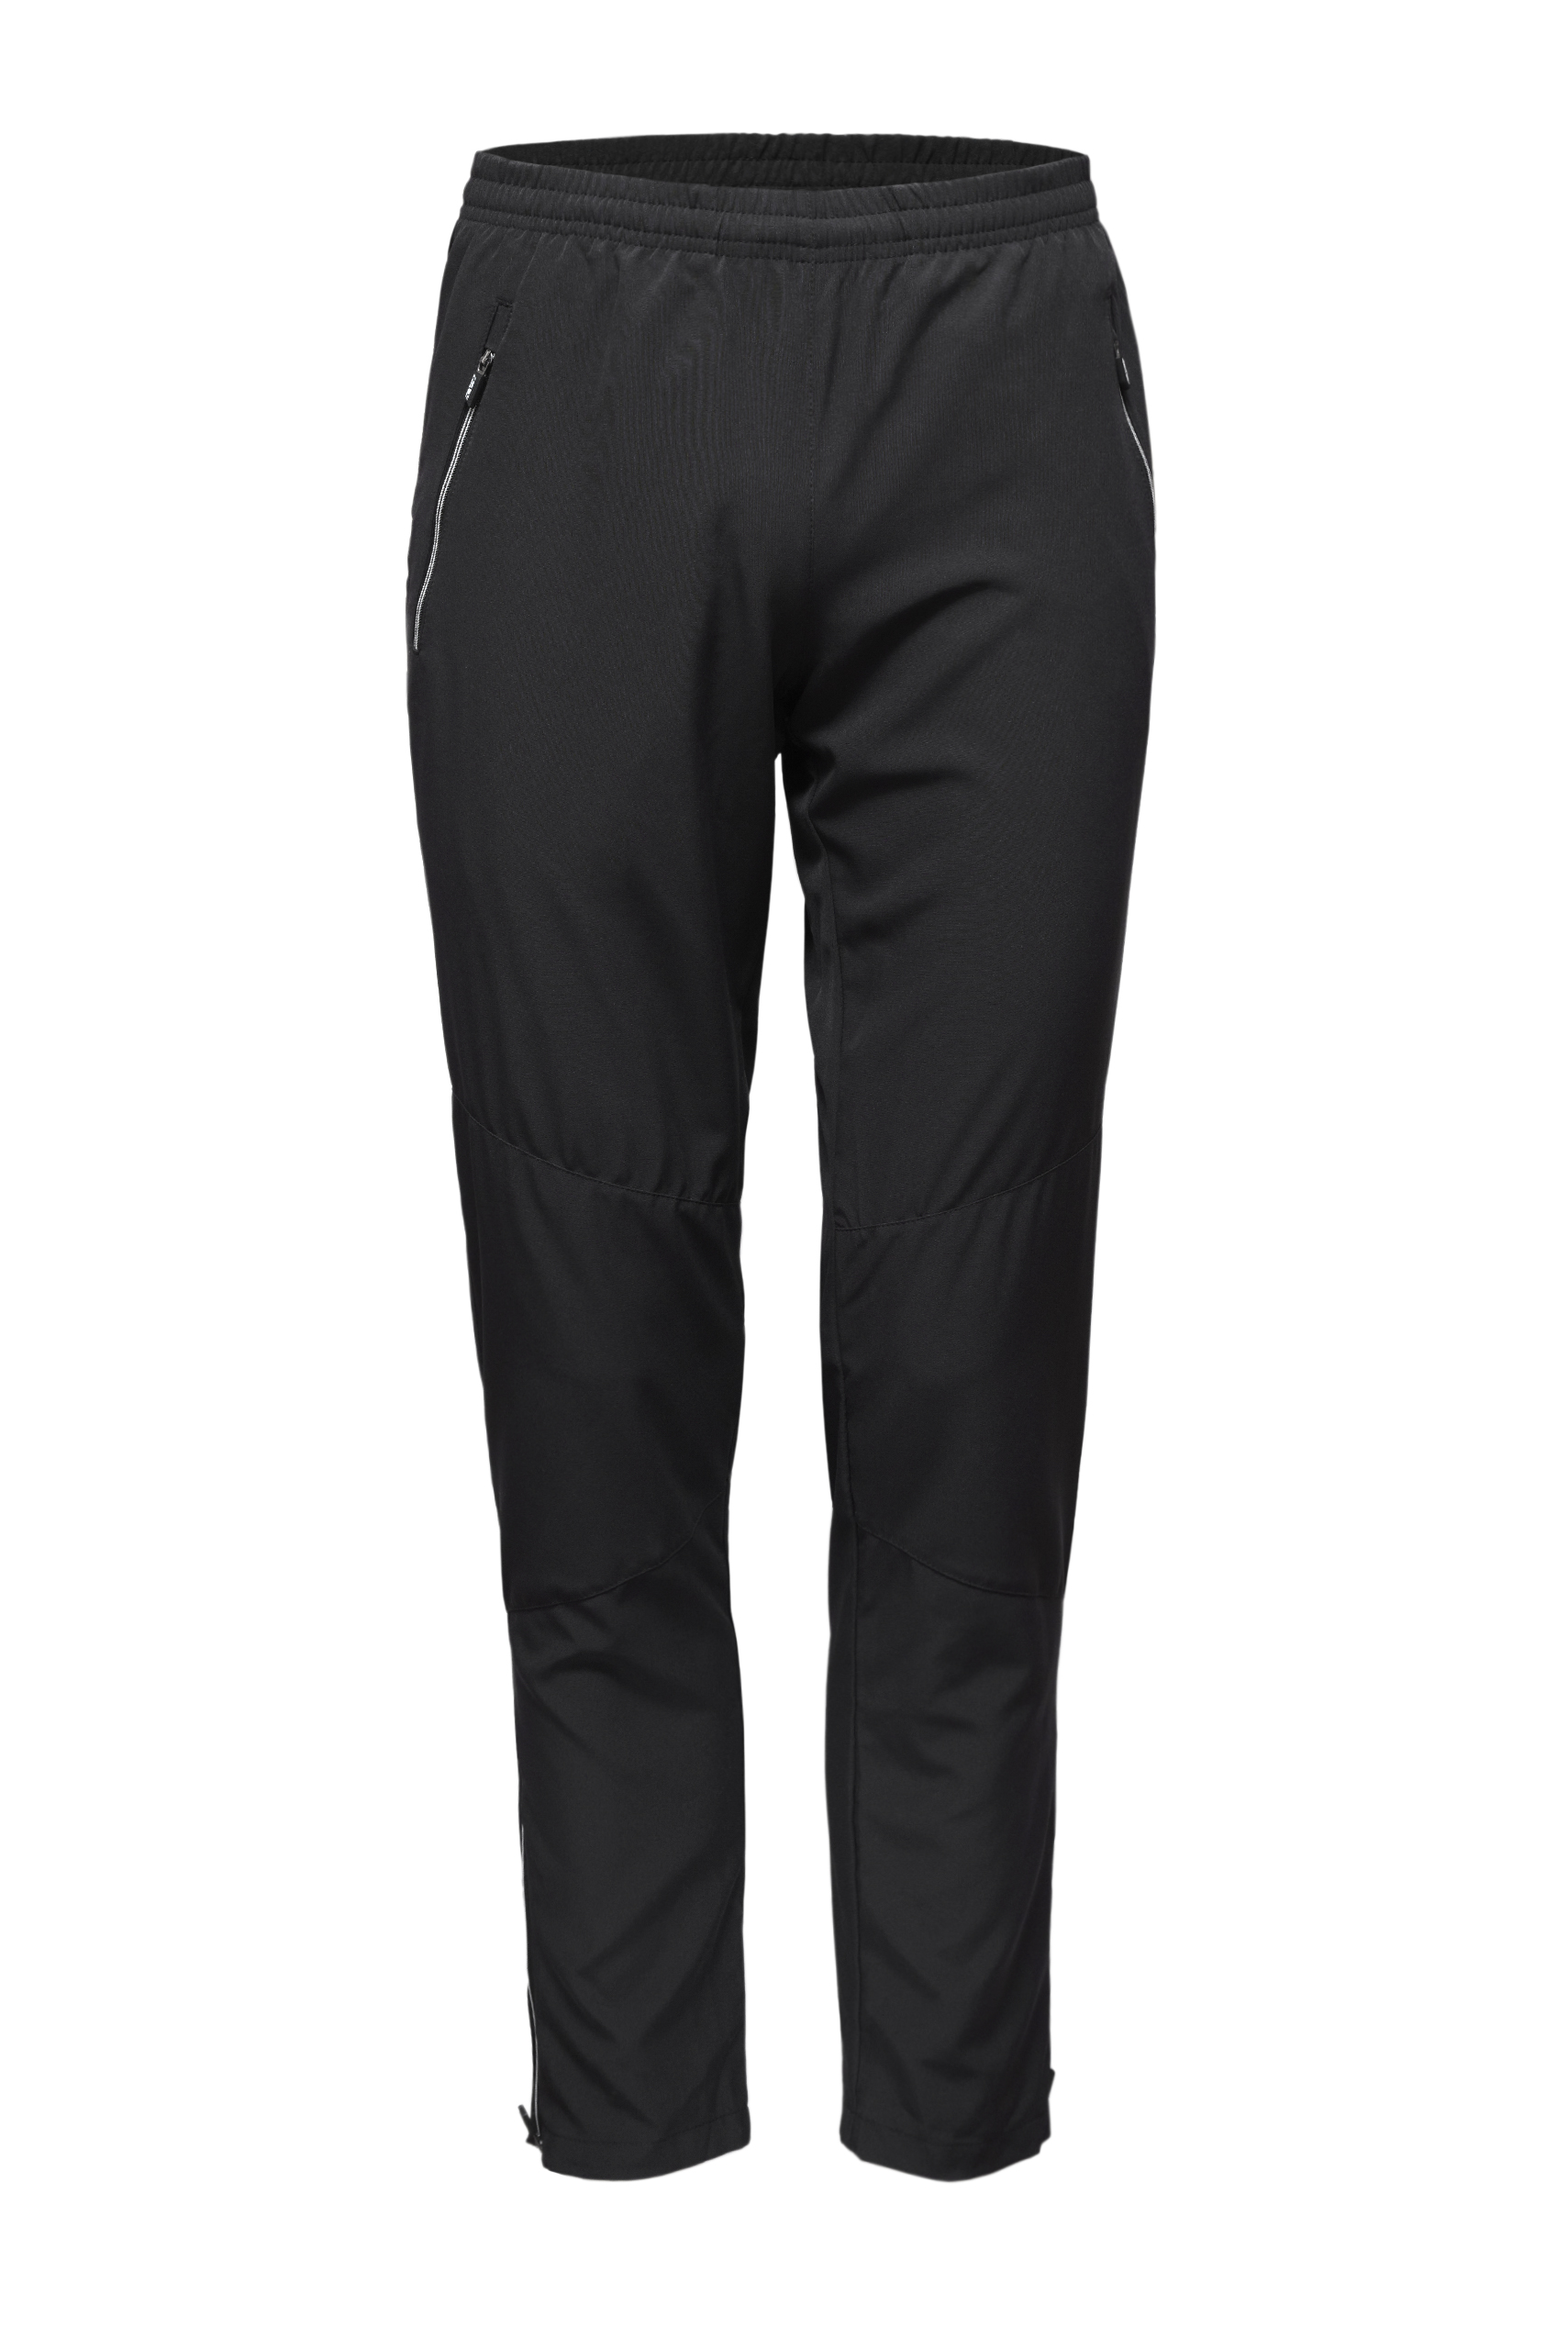 Спортивные брюки мужские KV+ SPRINT черные M